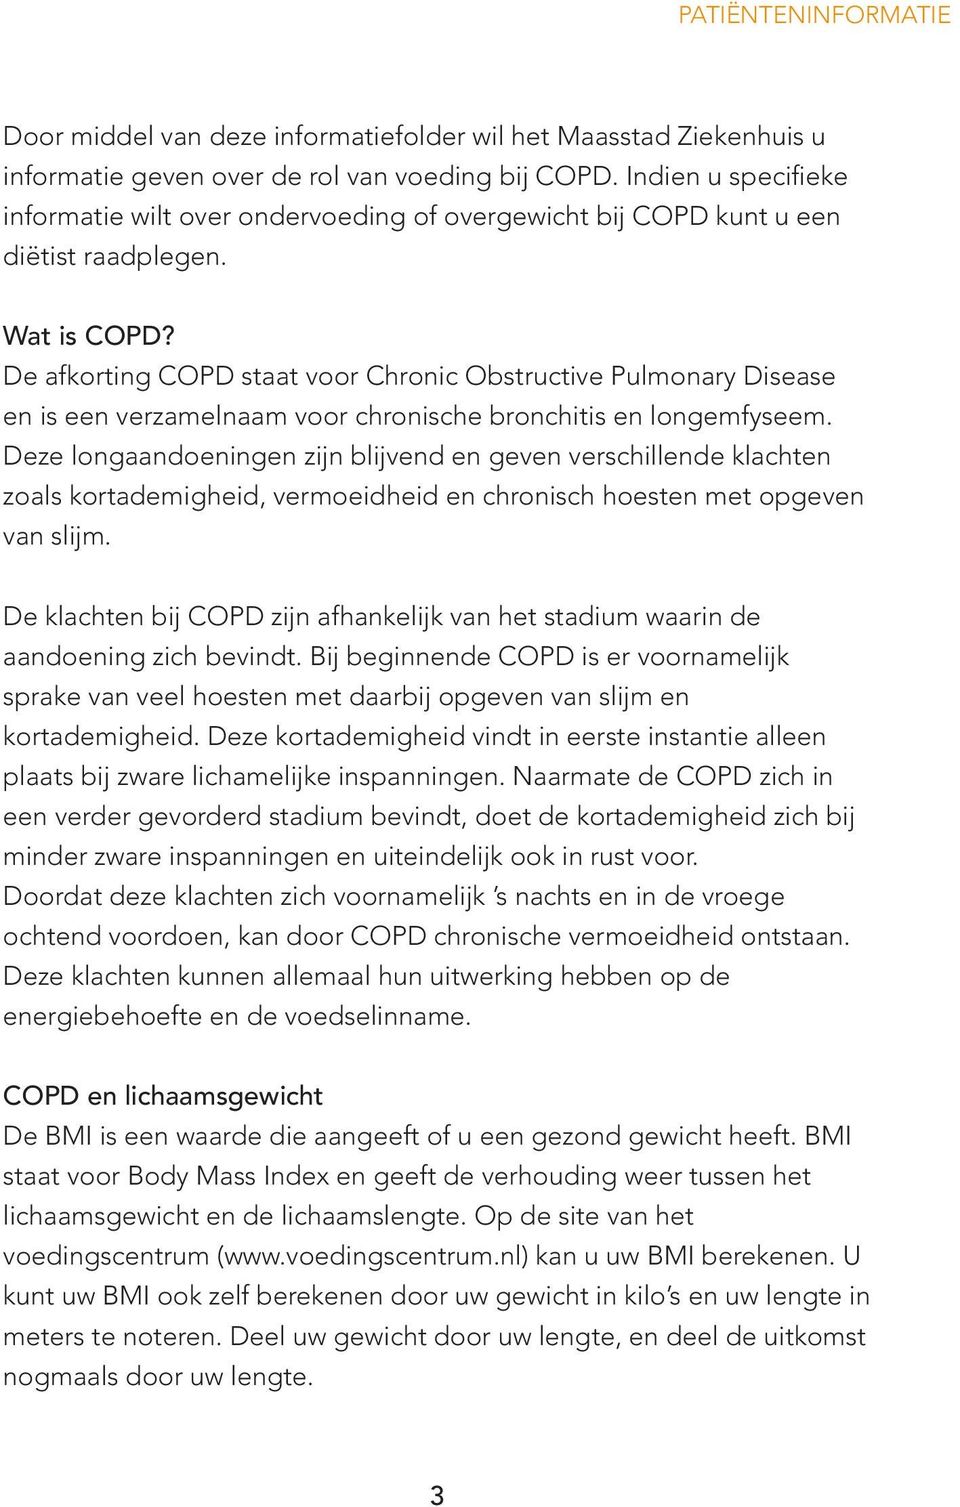 De afkorting COPD staat voor Chronic Obstructive Pulmonary Disease en is een verzamelnaam voor chronische bronchitis en longemfyseem.